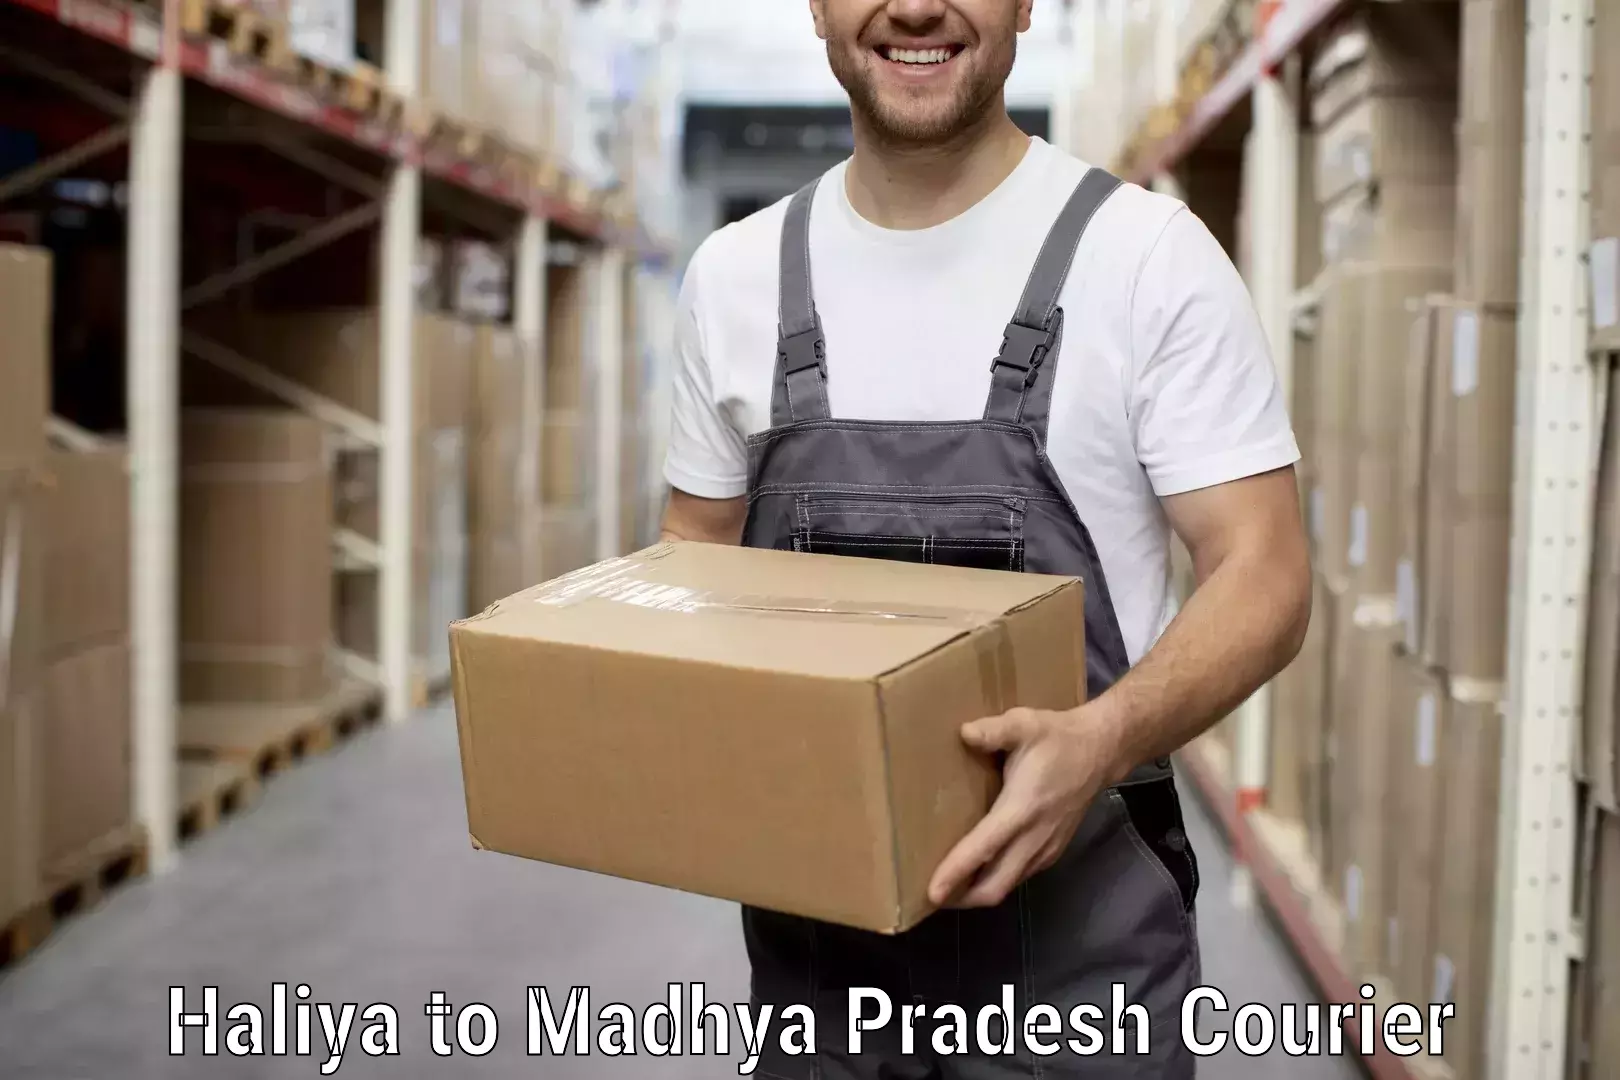 Moving and storage services Haliya to Ashoknagar